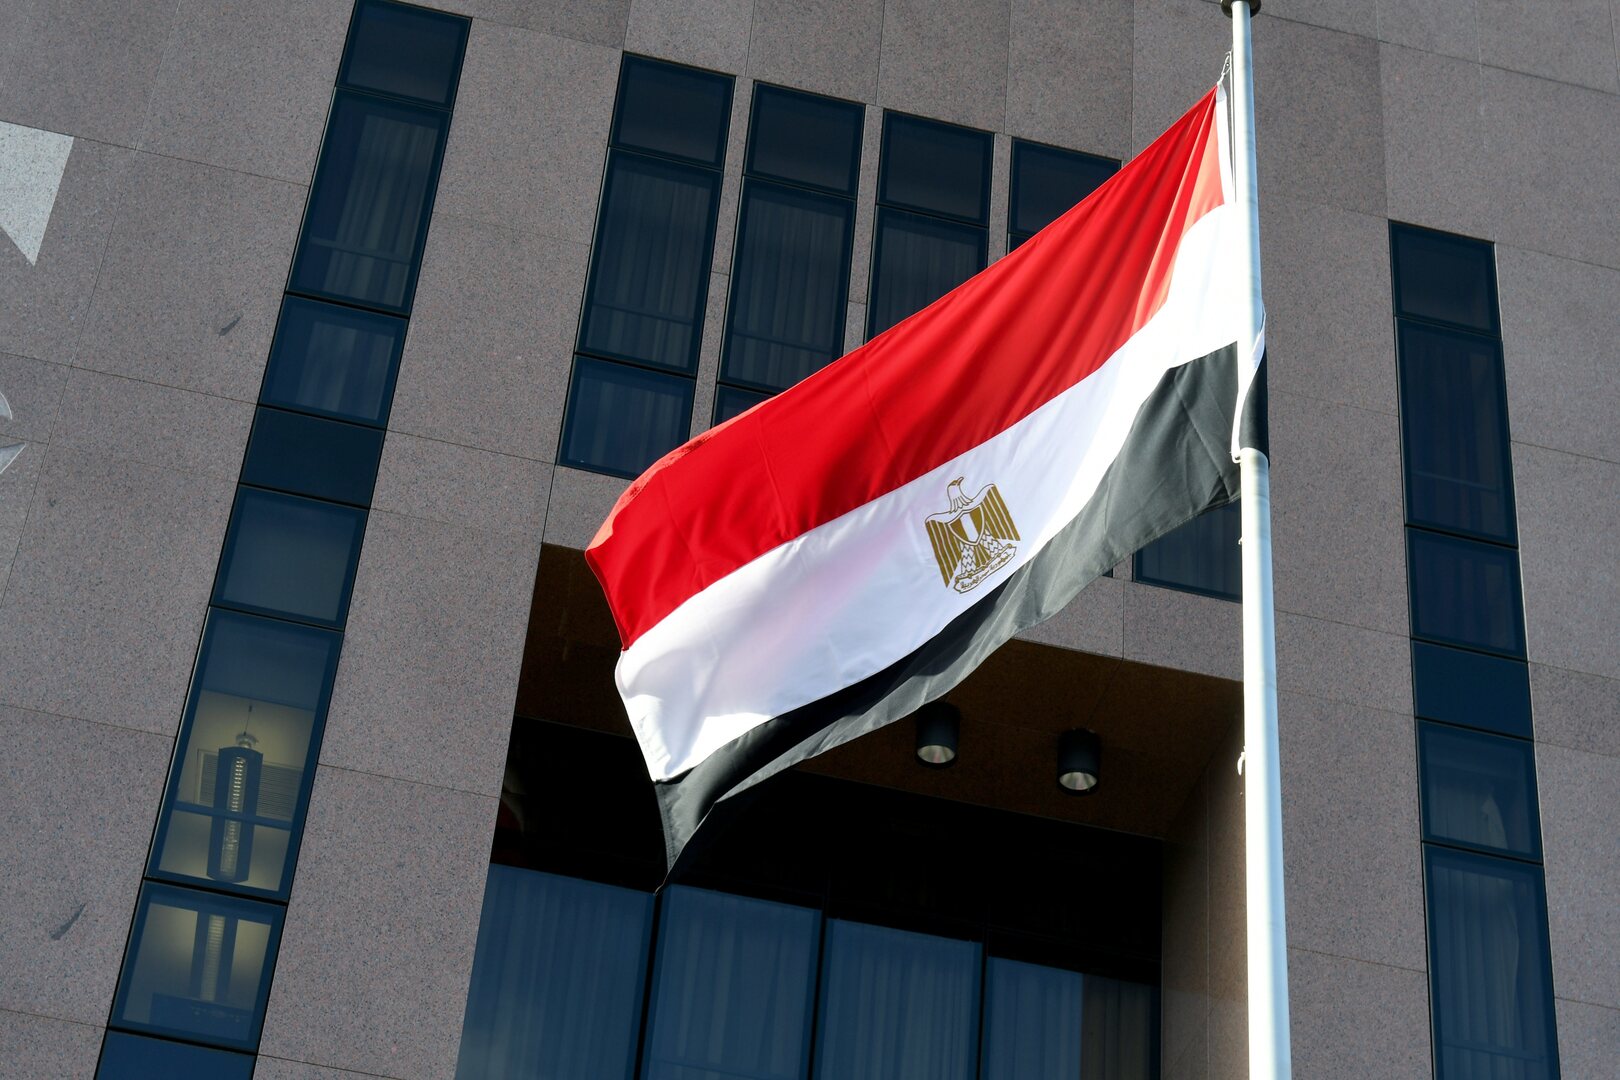 مصر.. استبعاد الإخوان من الحوار الوطني بشكل رسمي